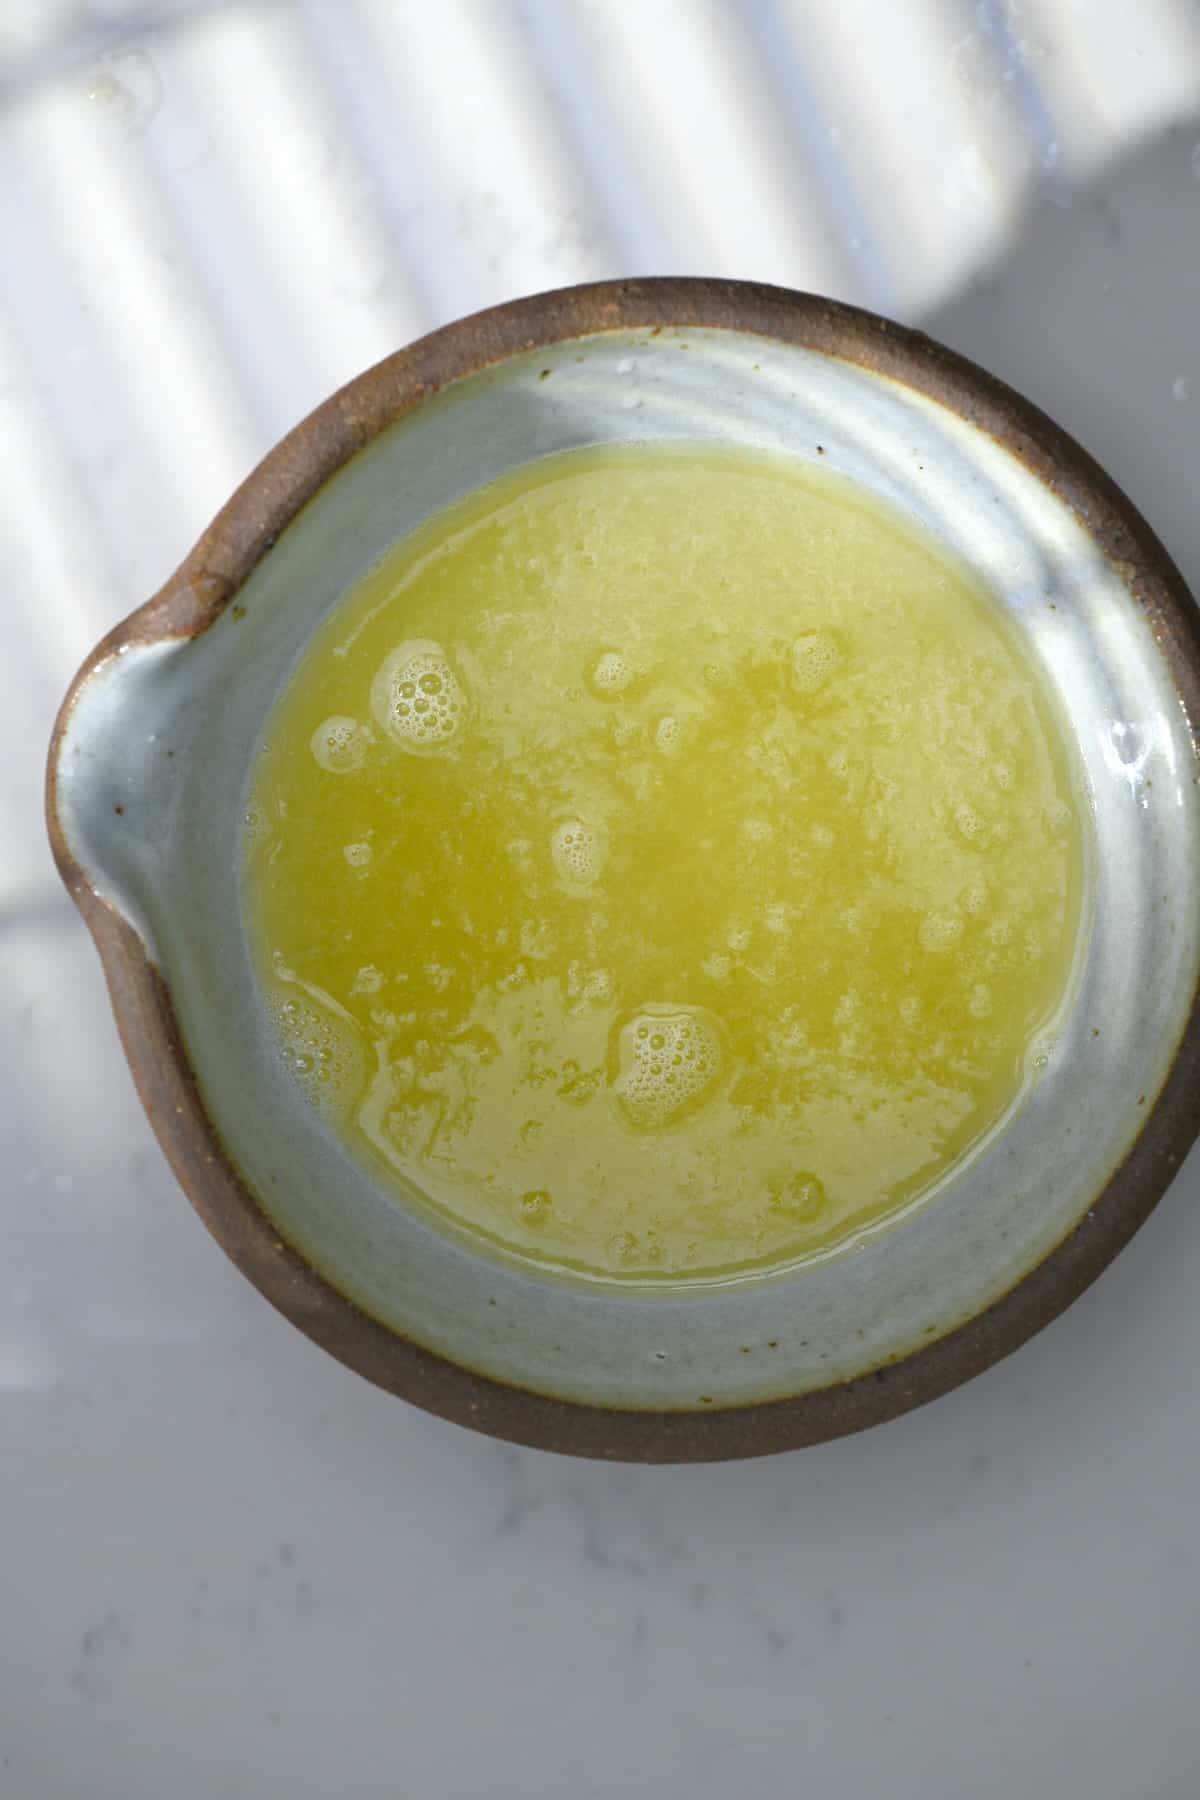 Lemon juice in a bowl